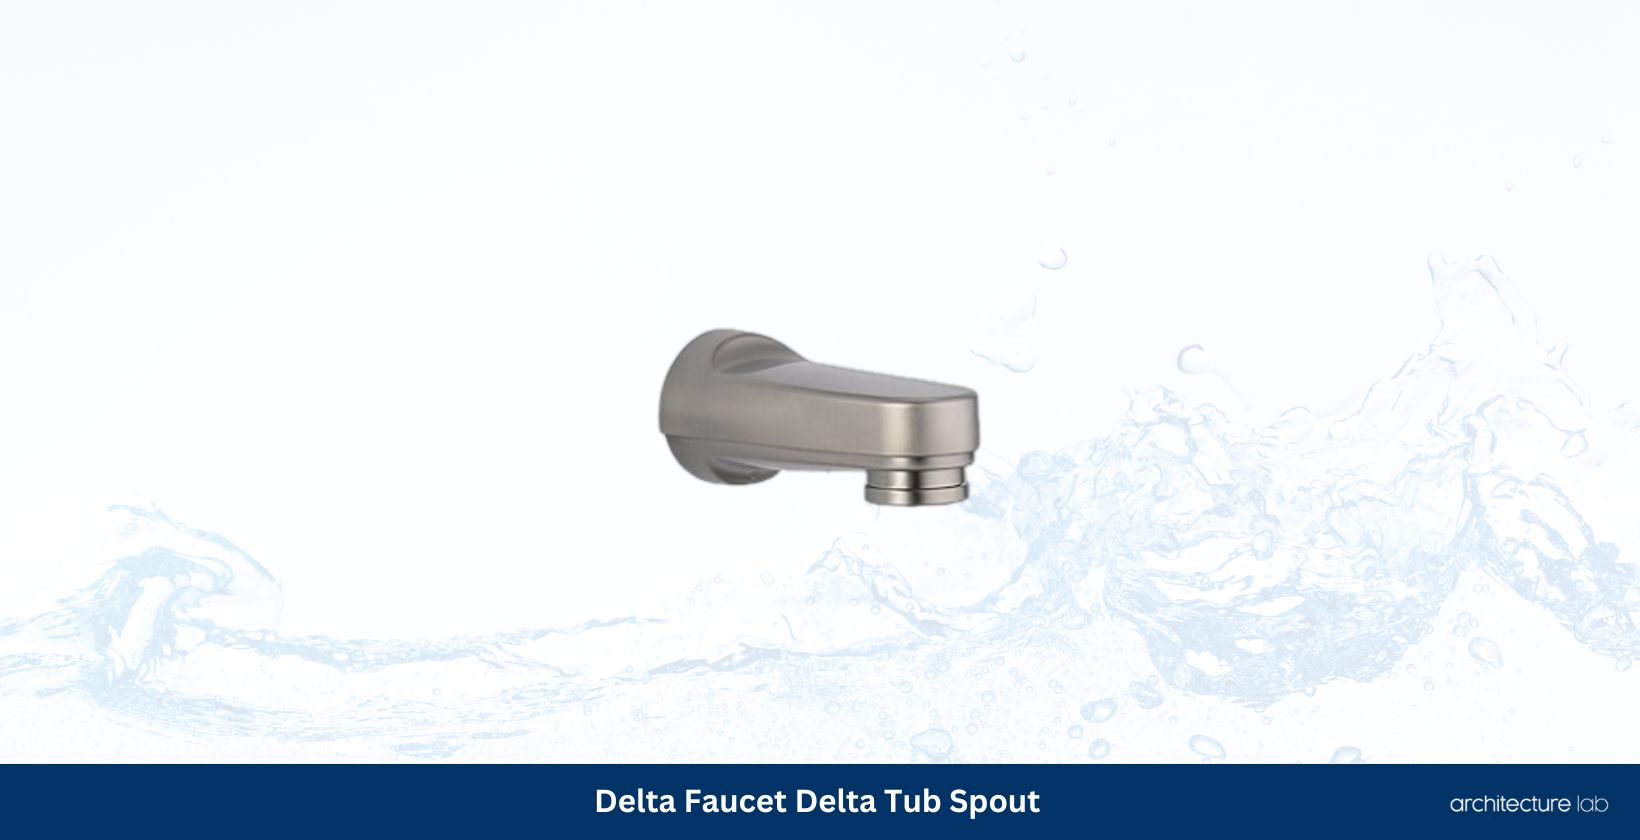 Delta faucet rp17453 tub spout